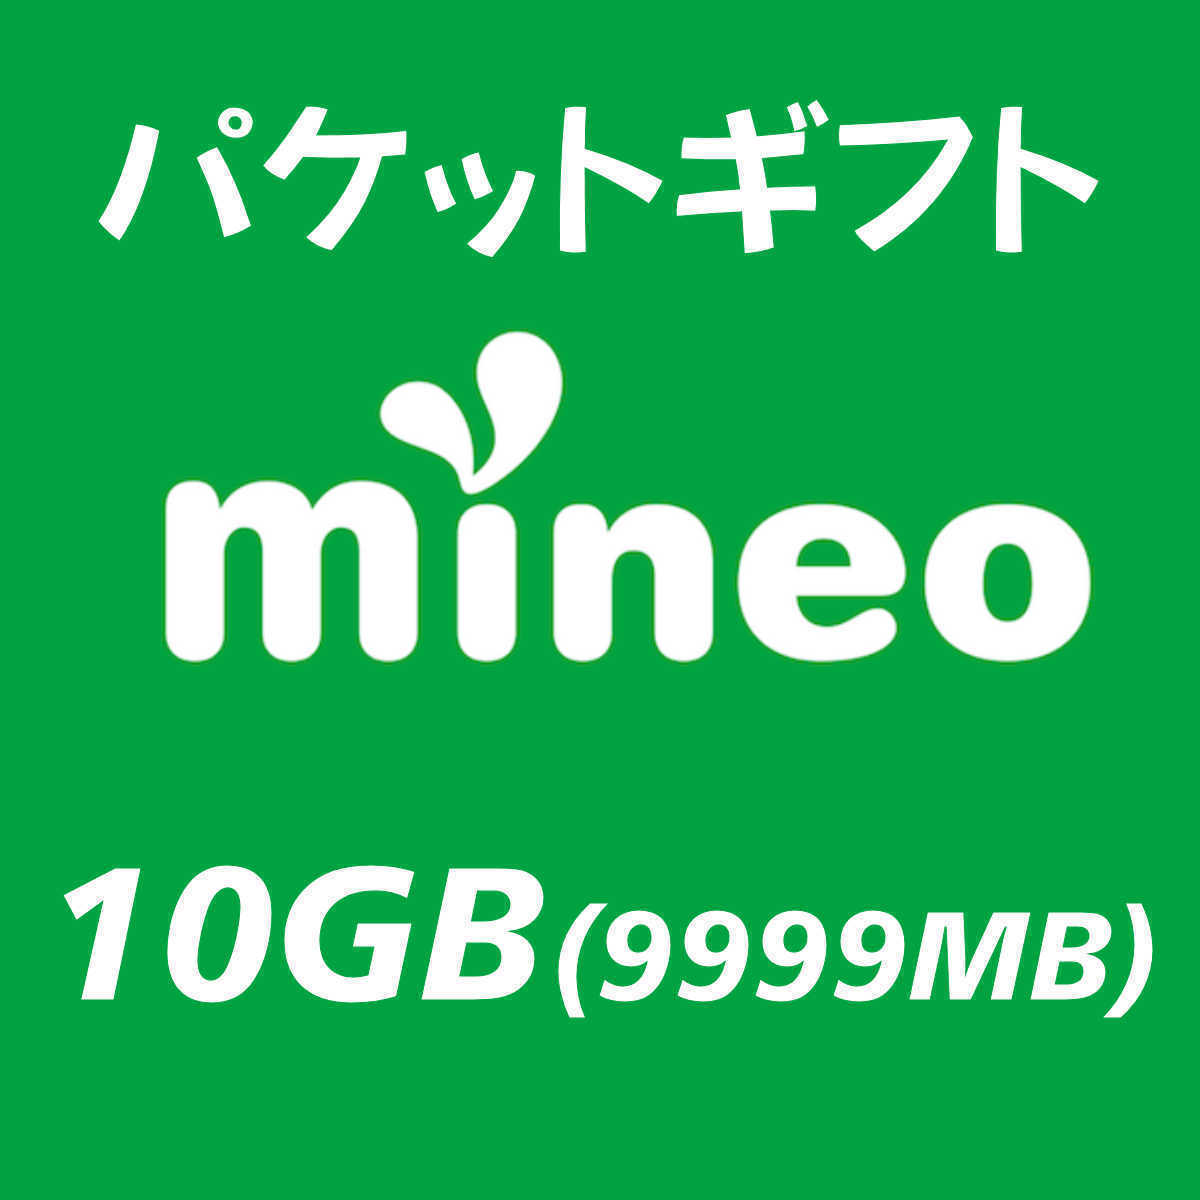 10GB(9999MB) マイネオ パケットギフト mineo ②の画像1